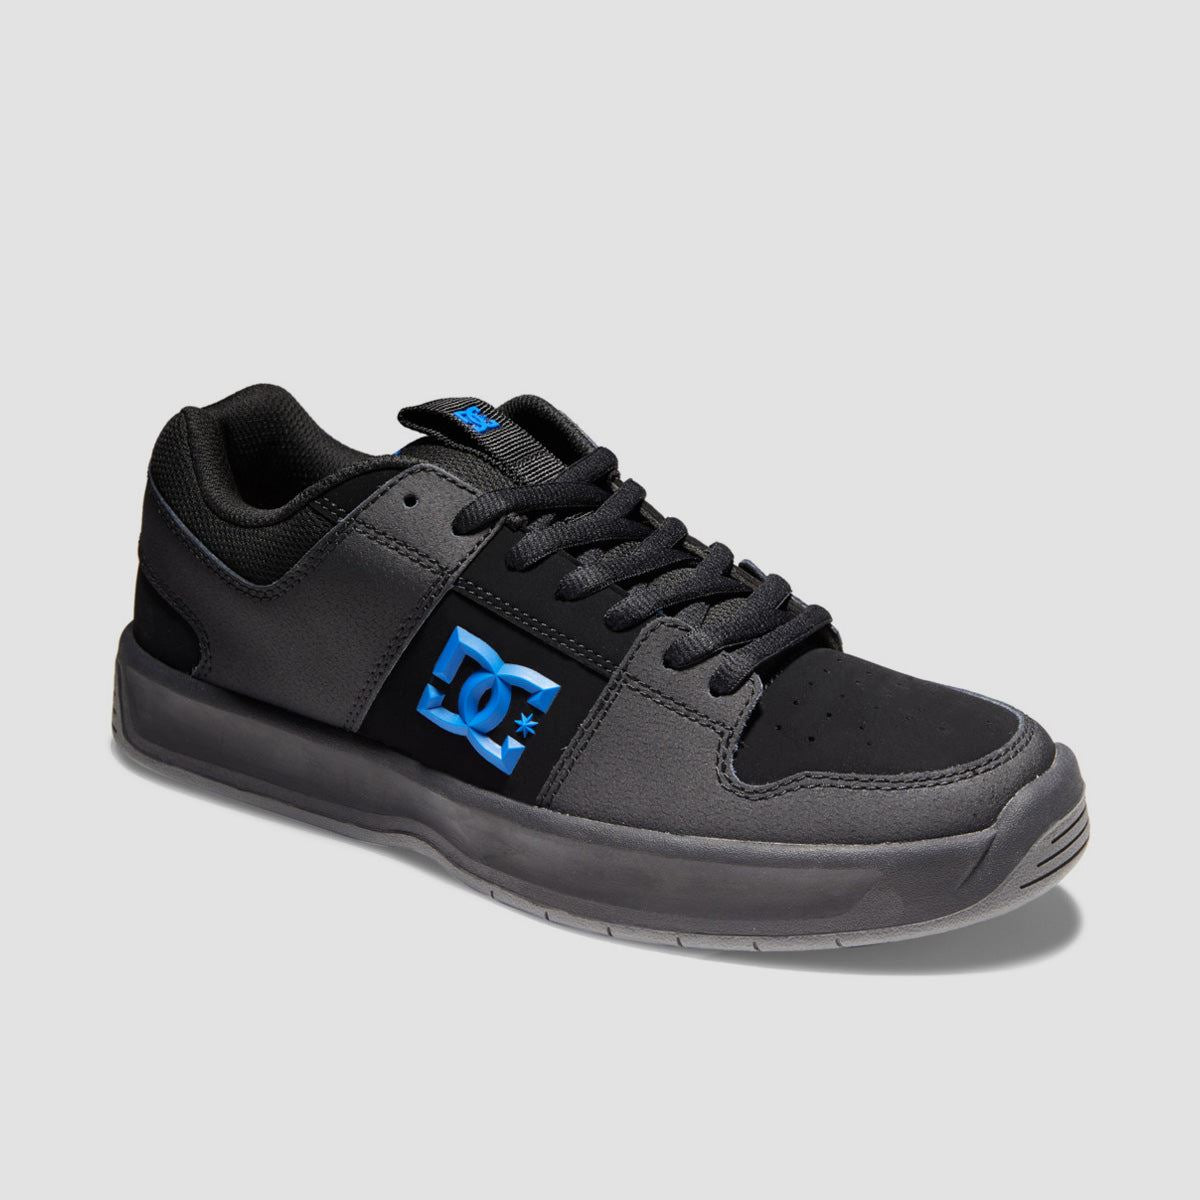 DC Lynx Zero S Shoes - Black/Blue